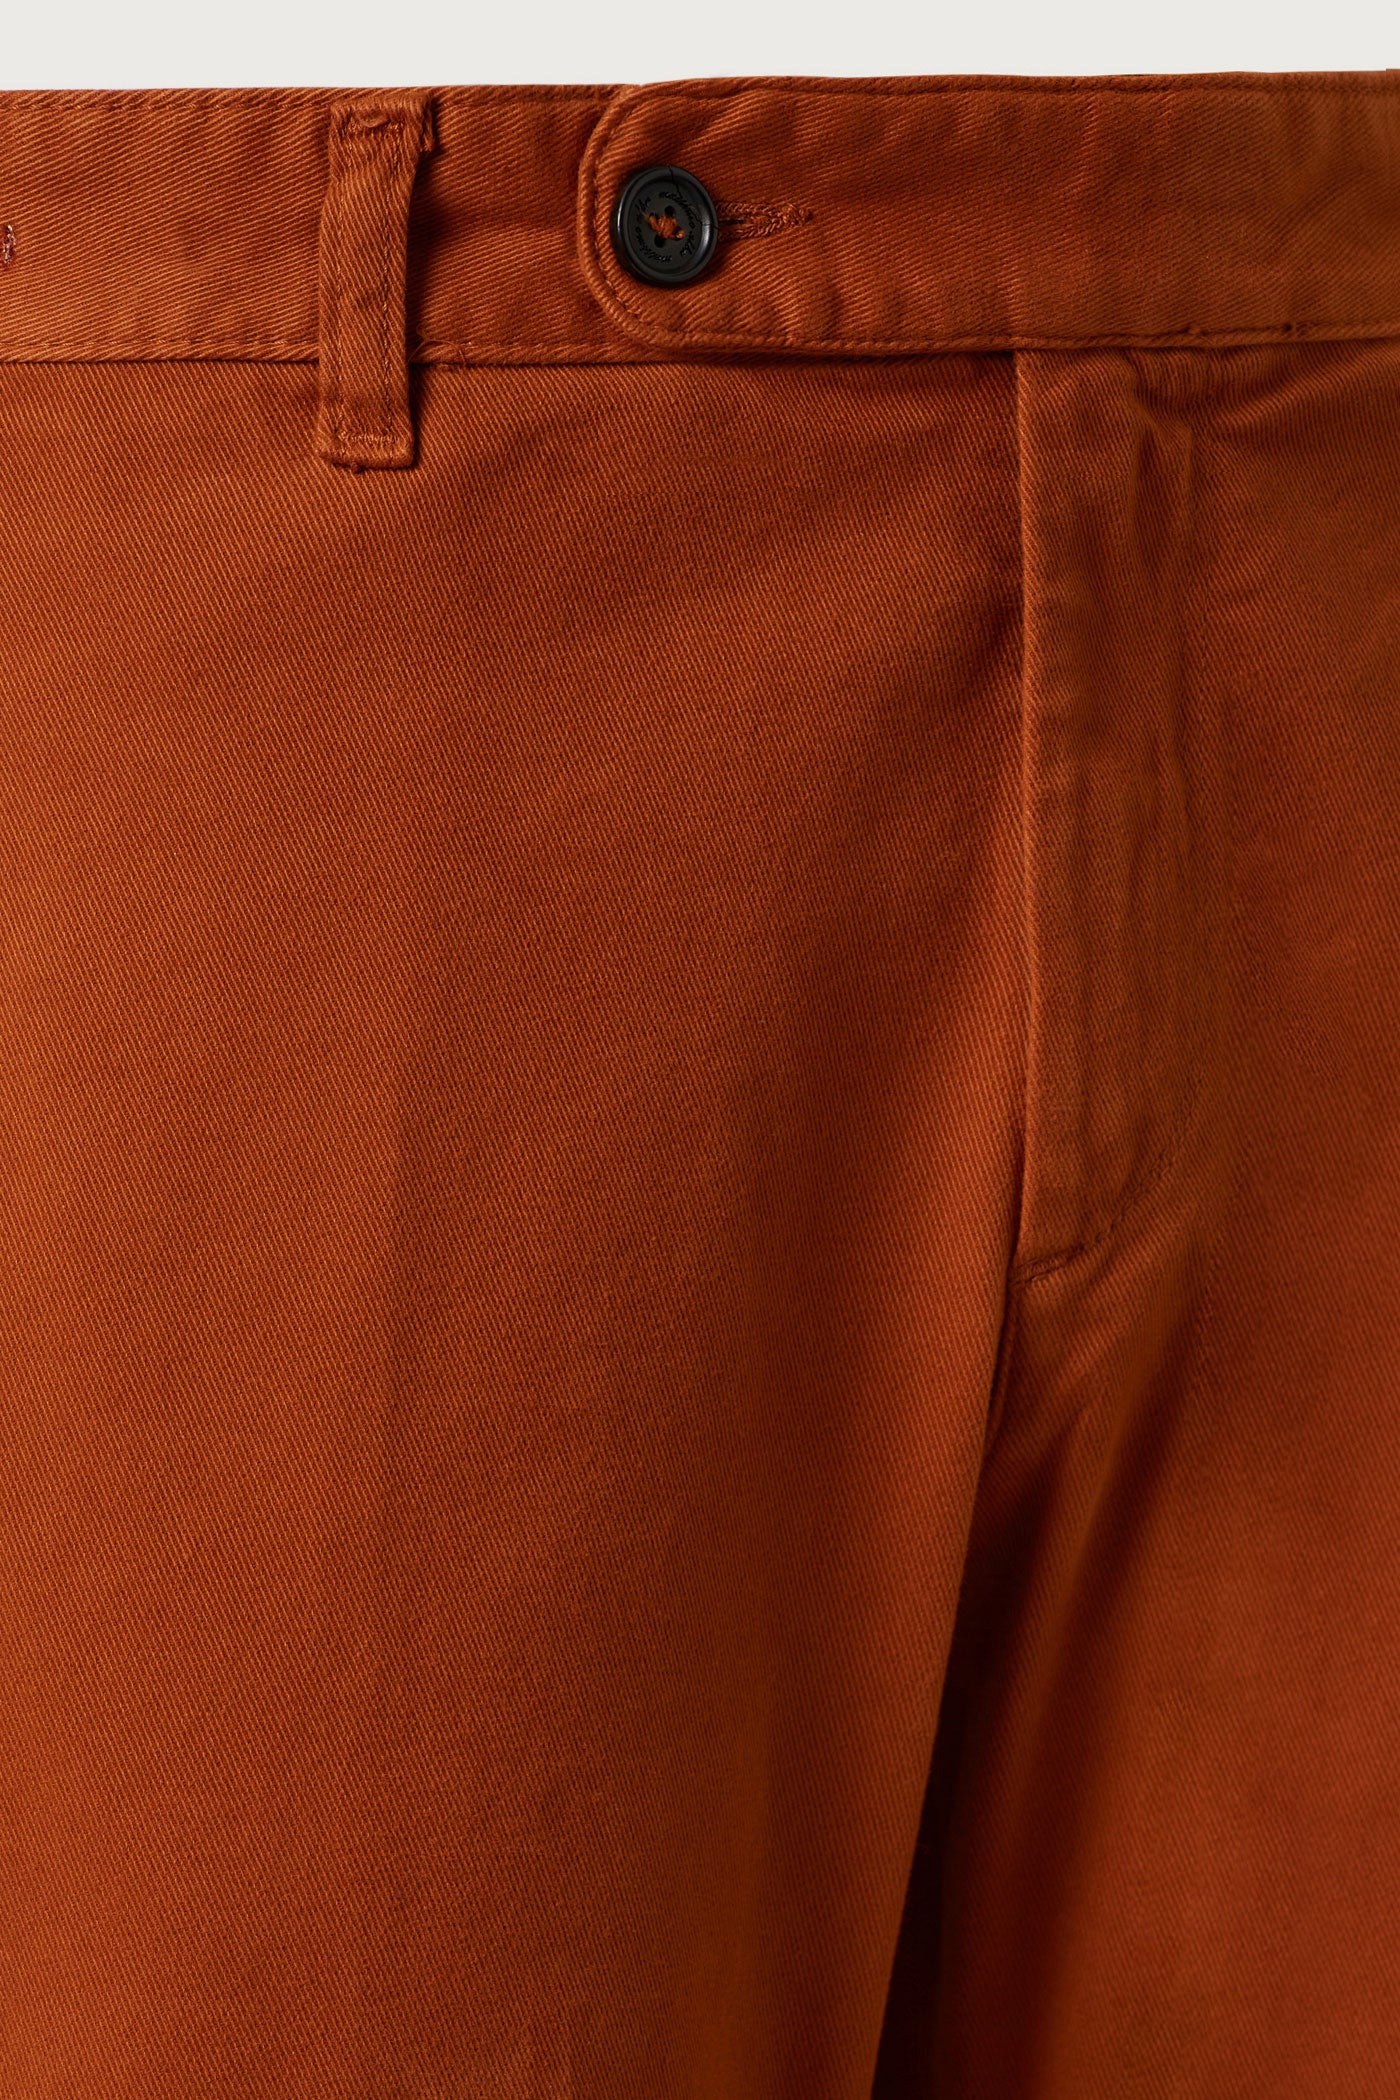 Men's Key AW13 Colour: Orange | FashionBeans